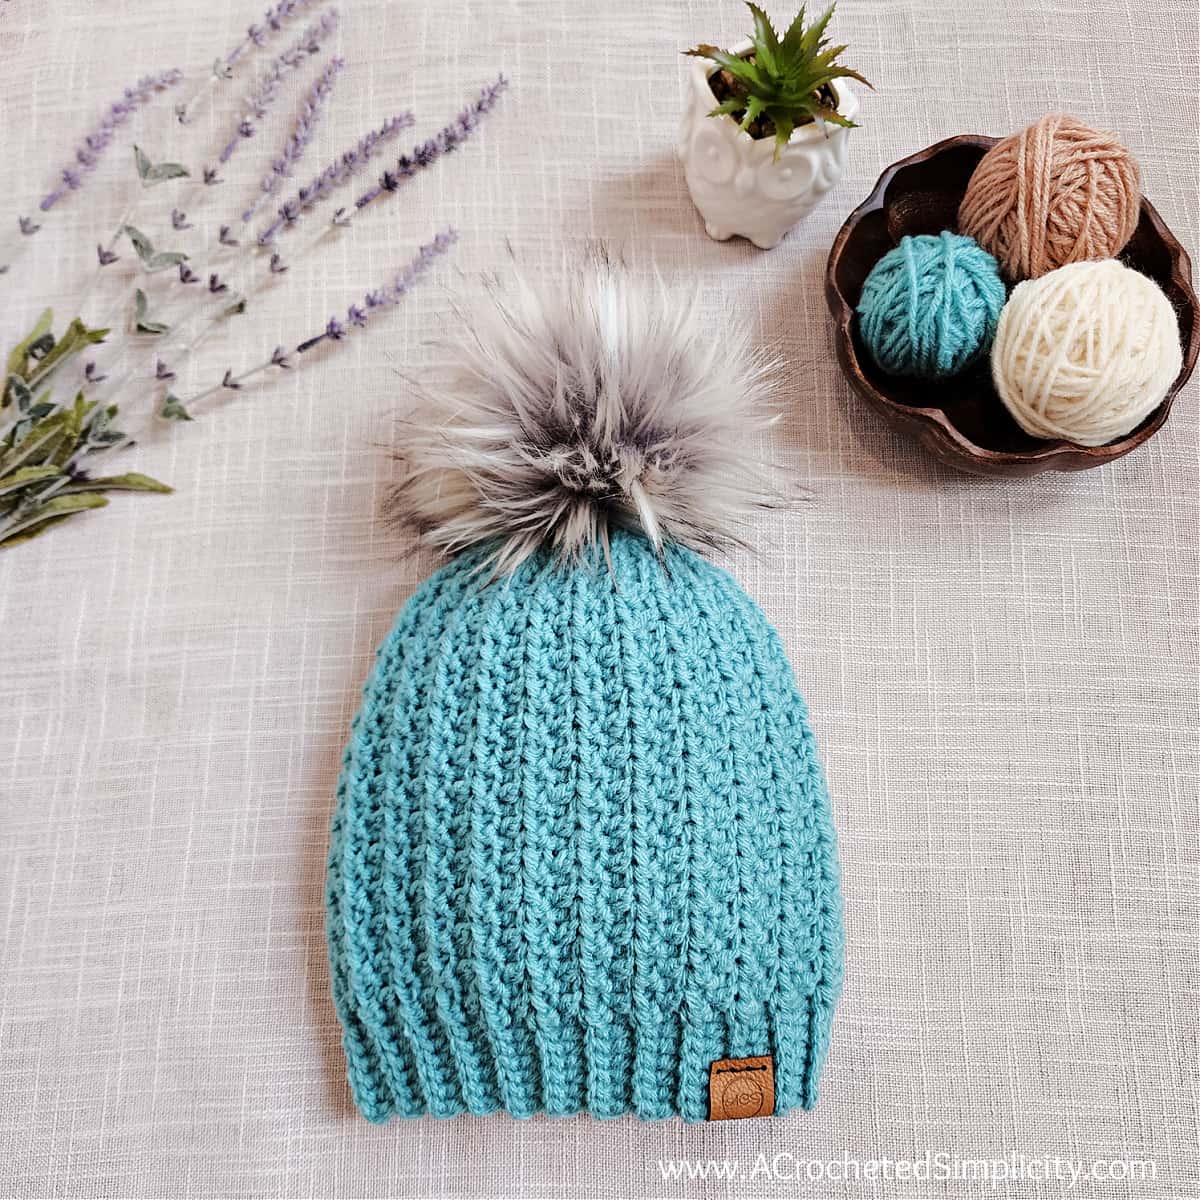 Aqua short row crochet hat with big fluffy faux fur pom, lavender and wooden yarn bowl.